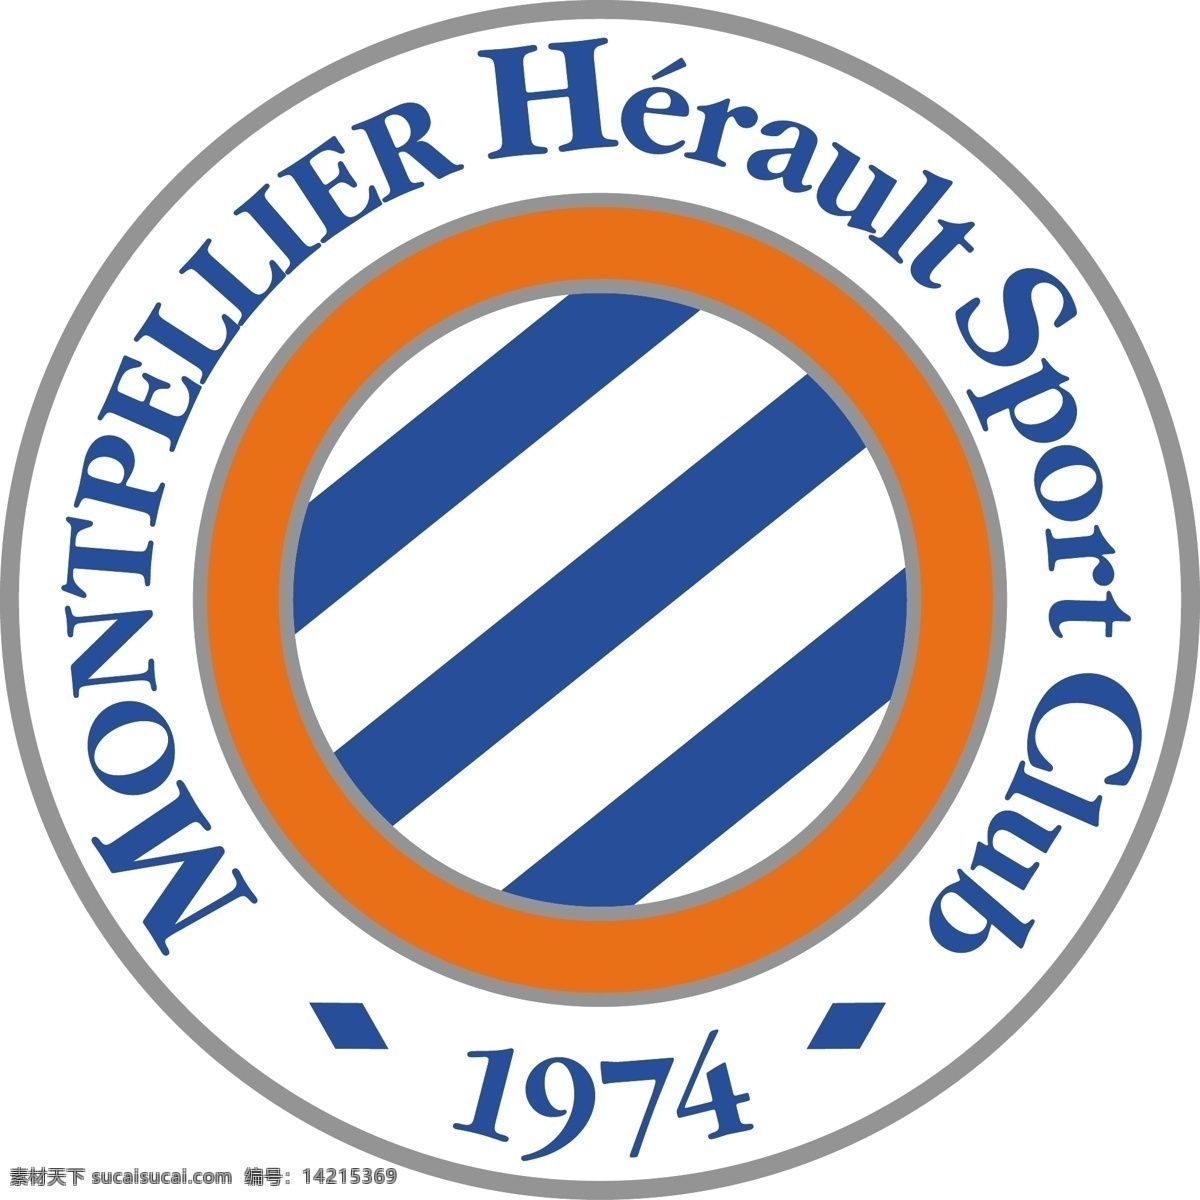 蒙彼利埃 足球 俱乐部 徽标 埃罗 法甲 法国 甲级 联赛 比赛 logo设计 白色